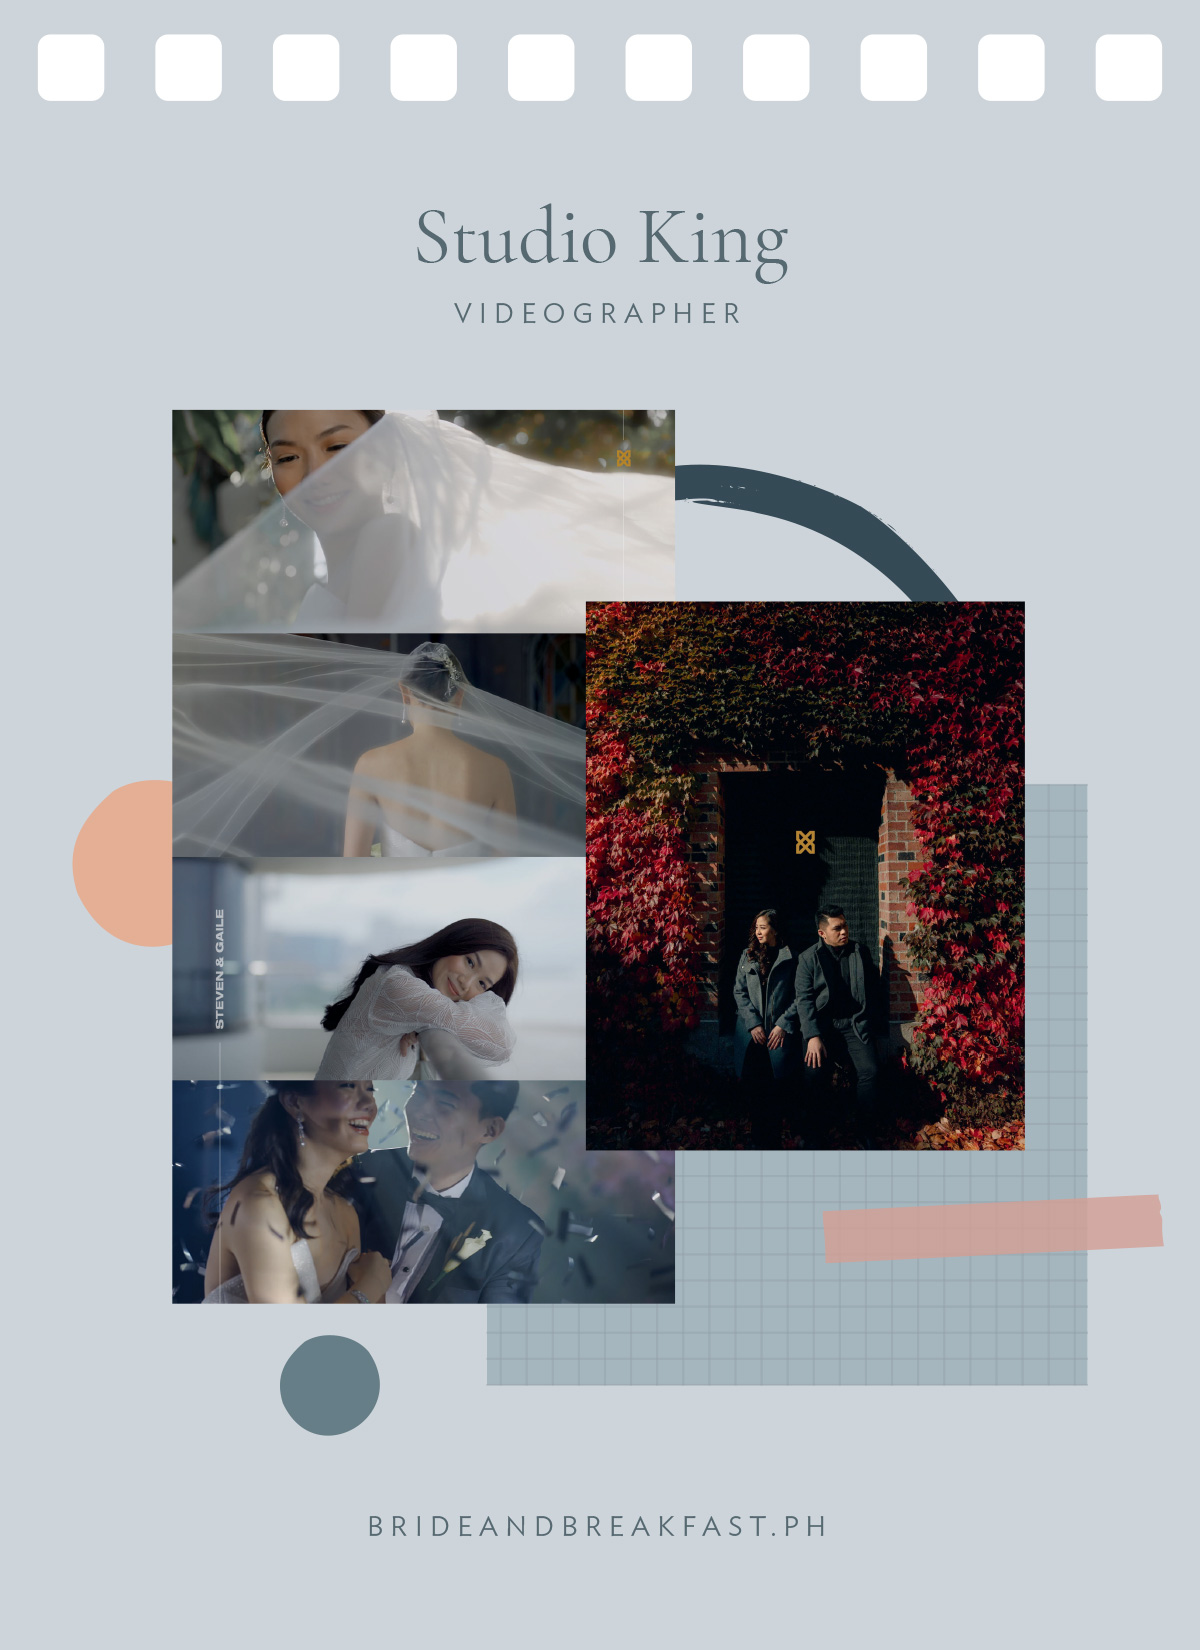 Studio King (Videographer)